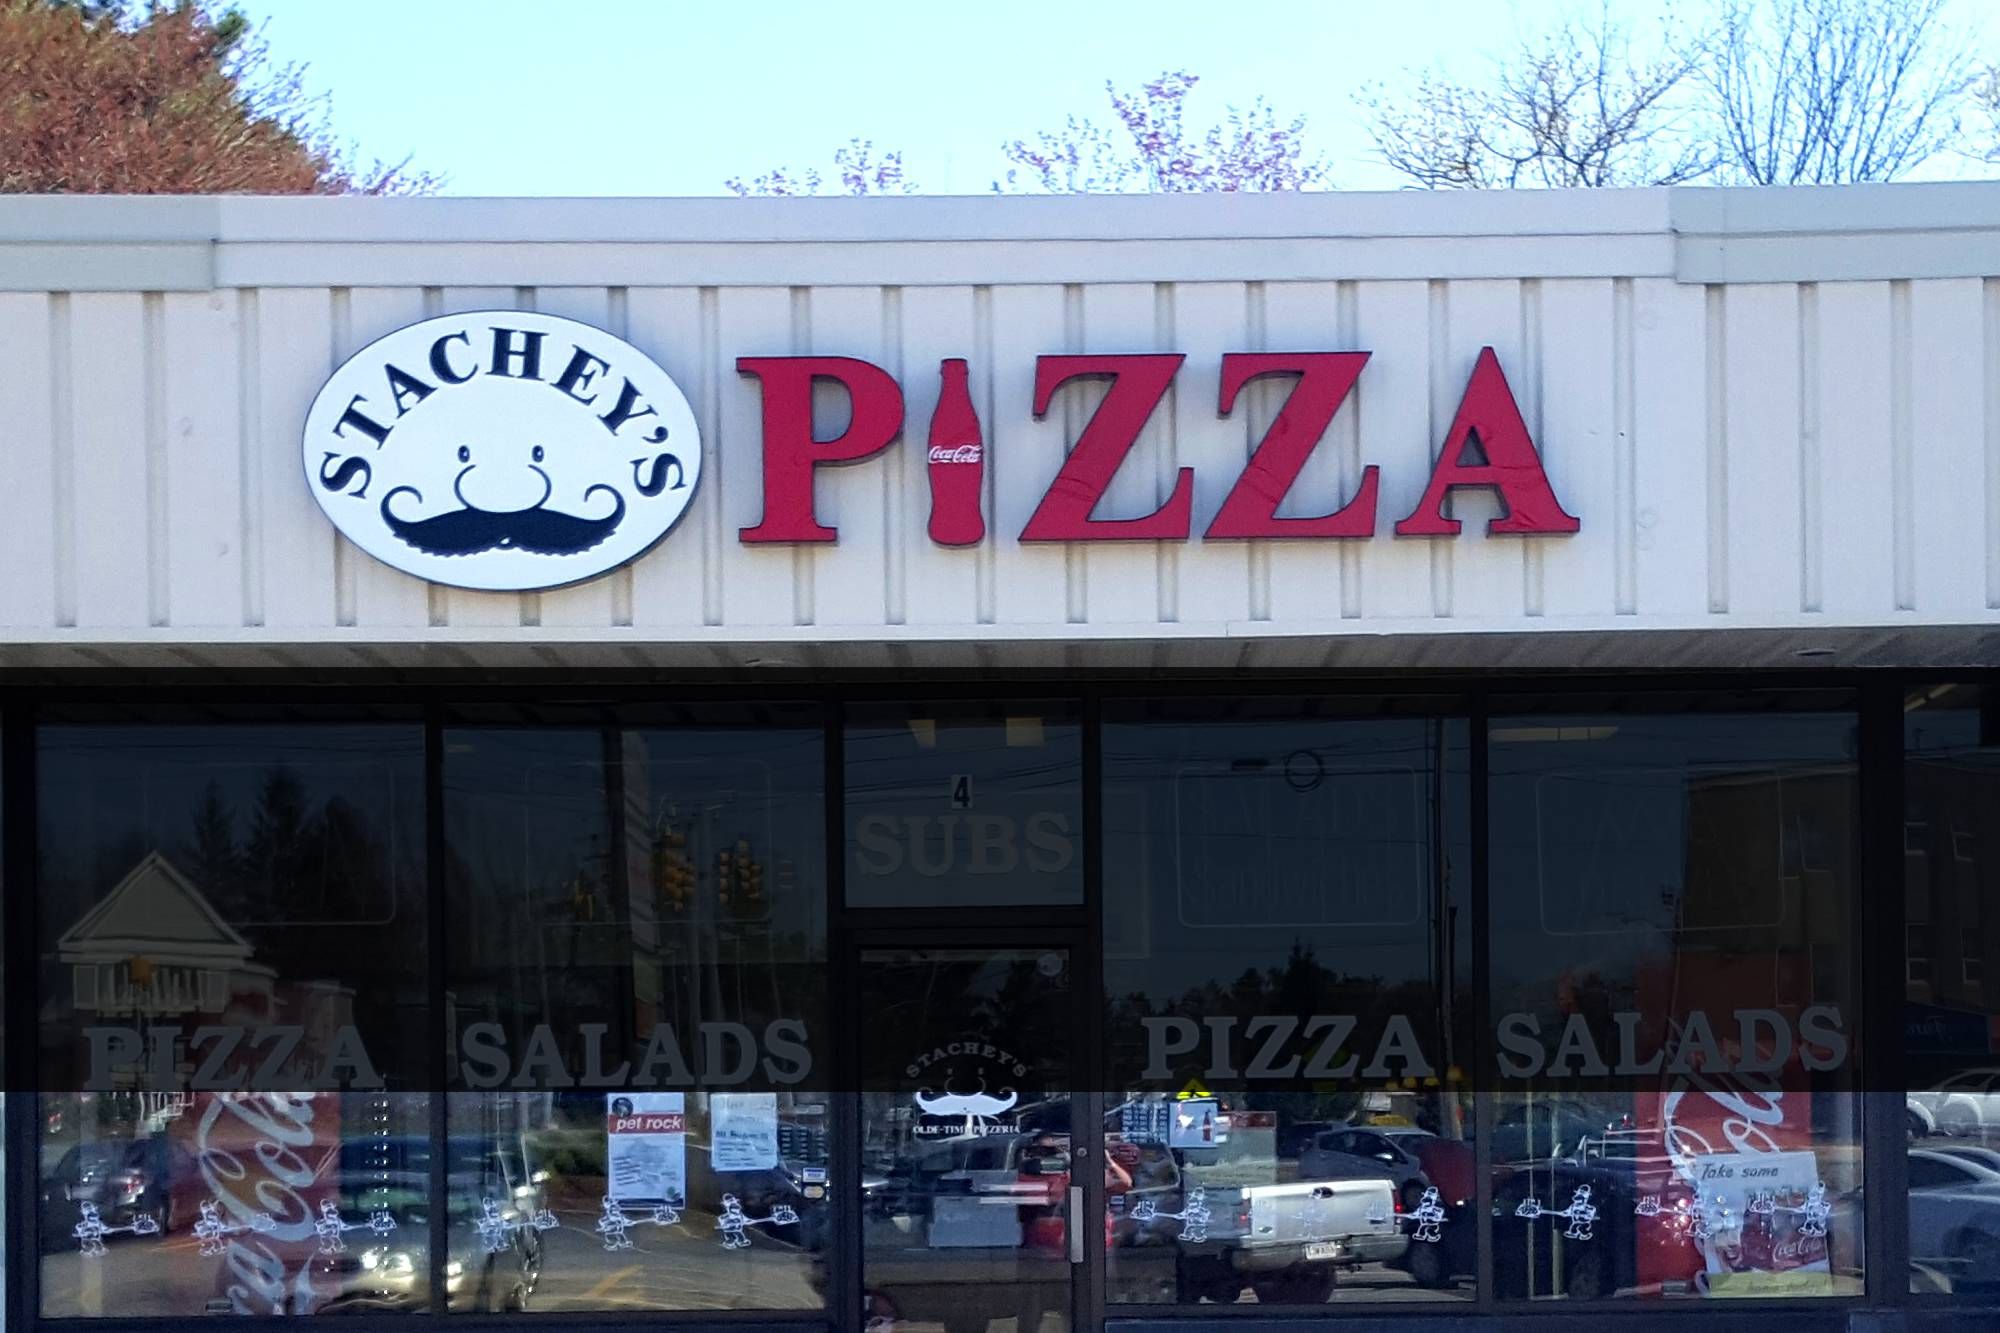 Stachey's Pizza - Salem, NH - 517 South Broadway Salem, NH - 603-893-1999